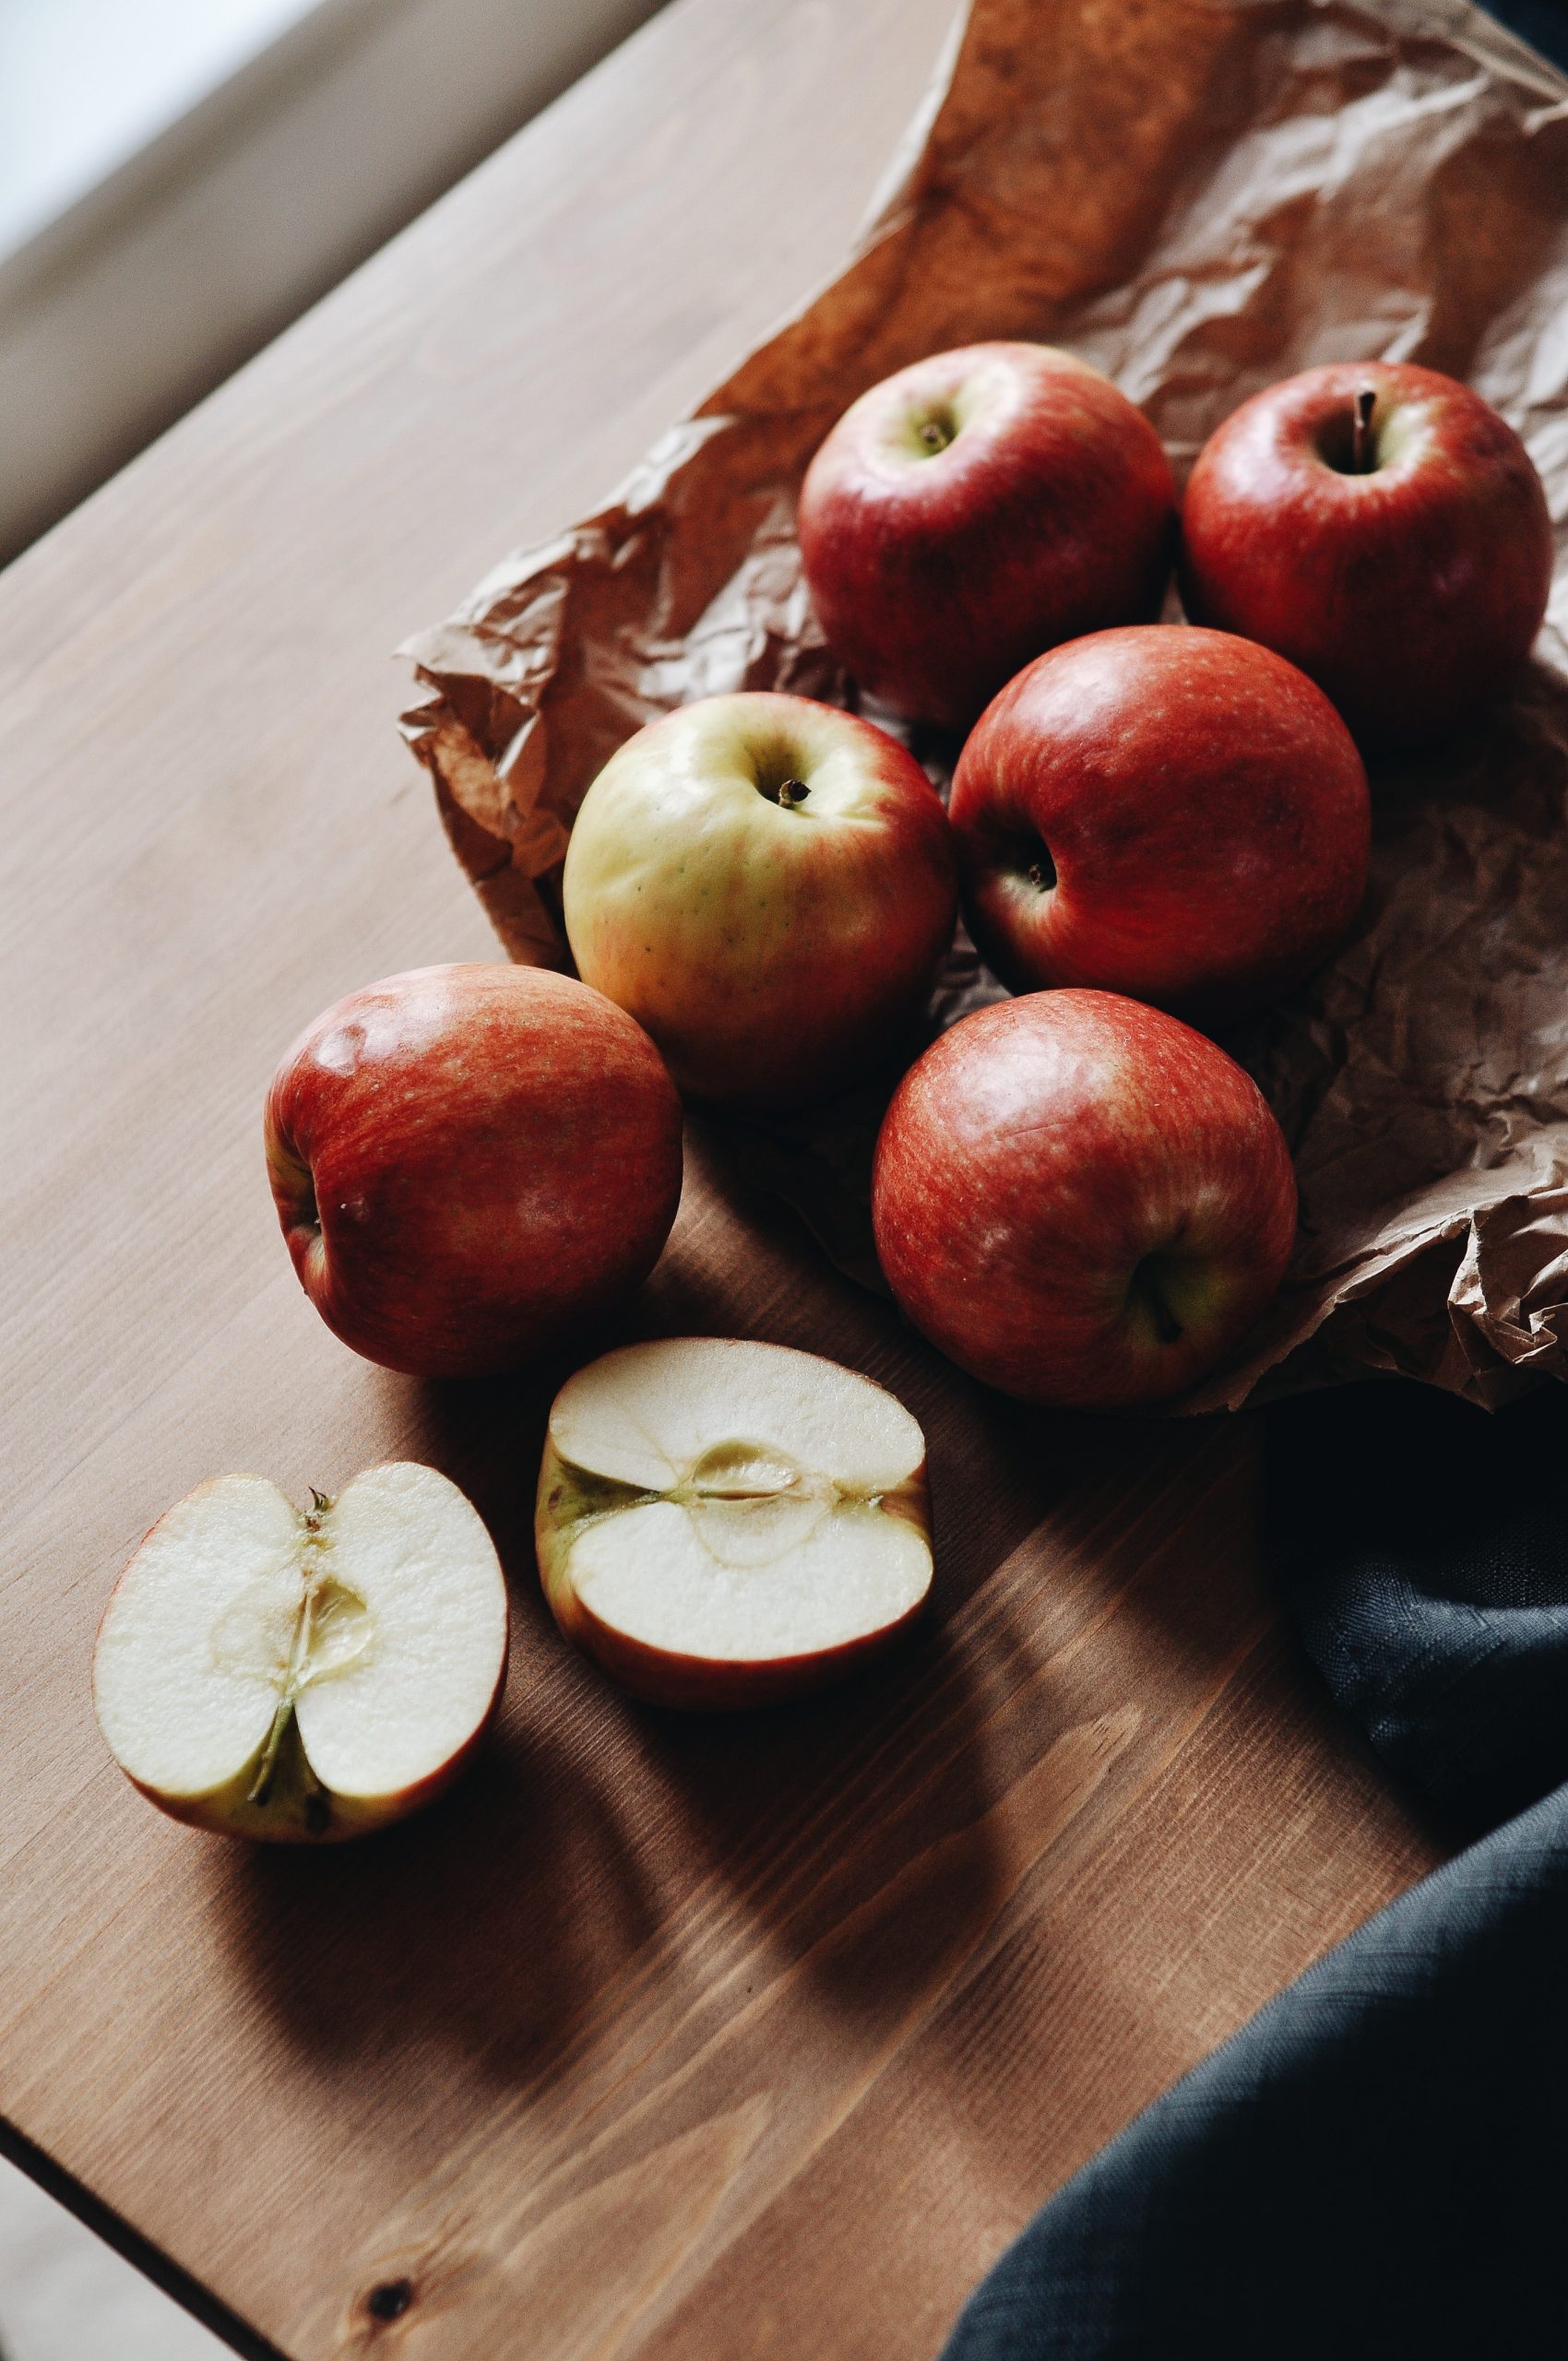 Dijeta sa jabukama koja je savršena posle praznika: Recite zbogom gladi i holesterolu i obavezno zapišite jelovnik!